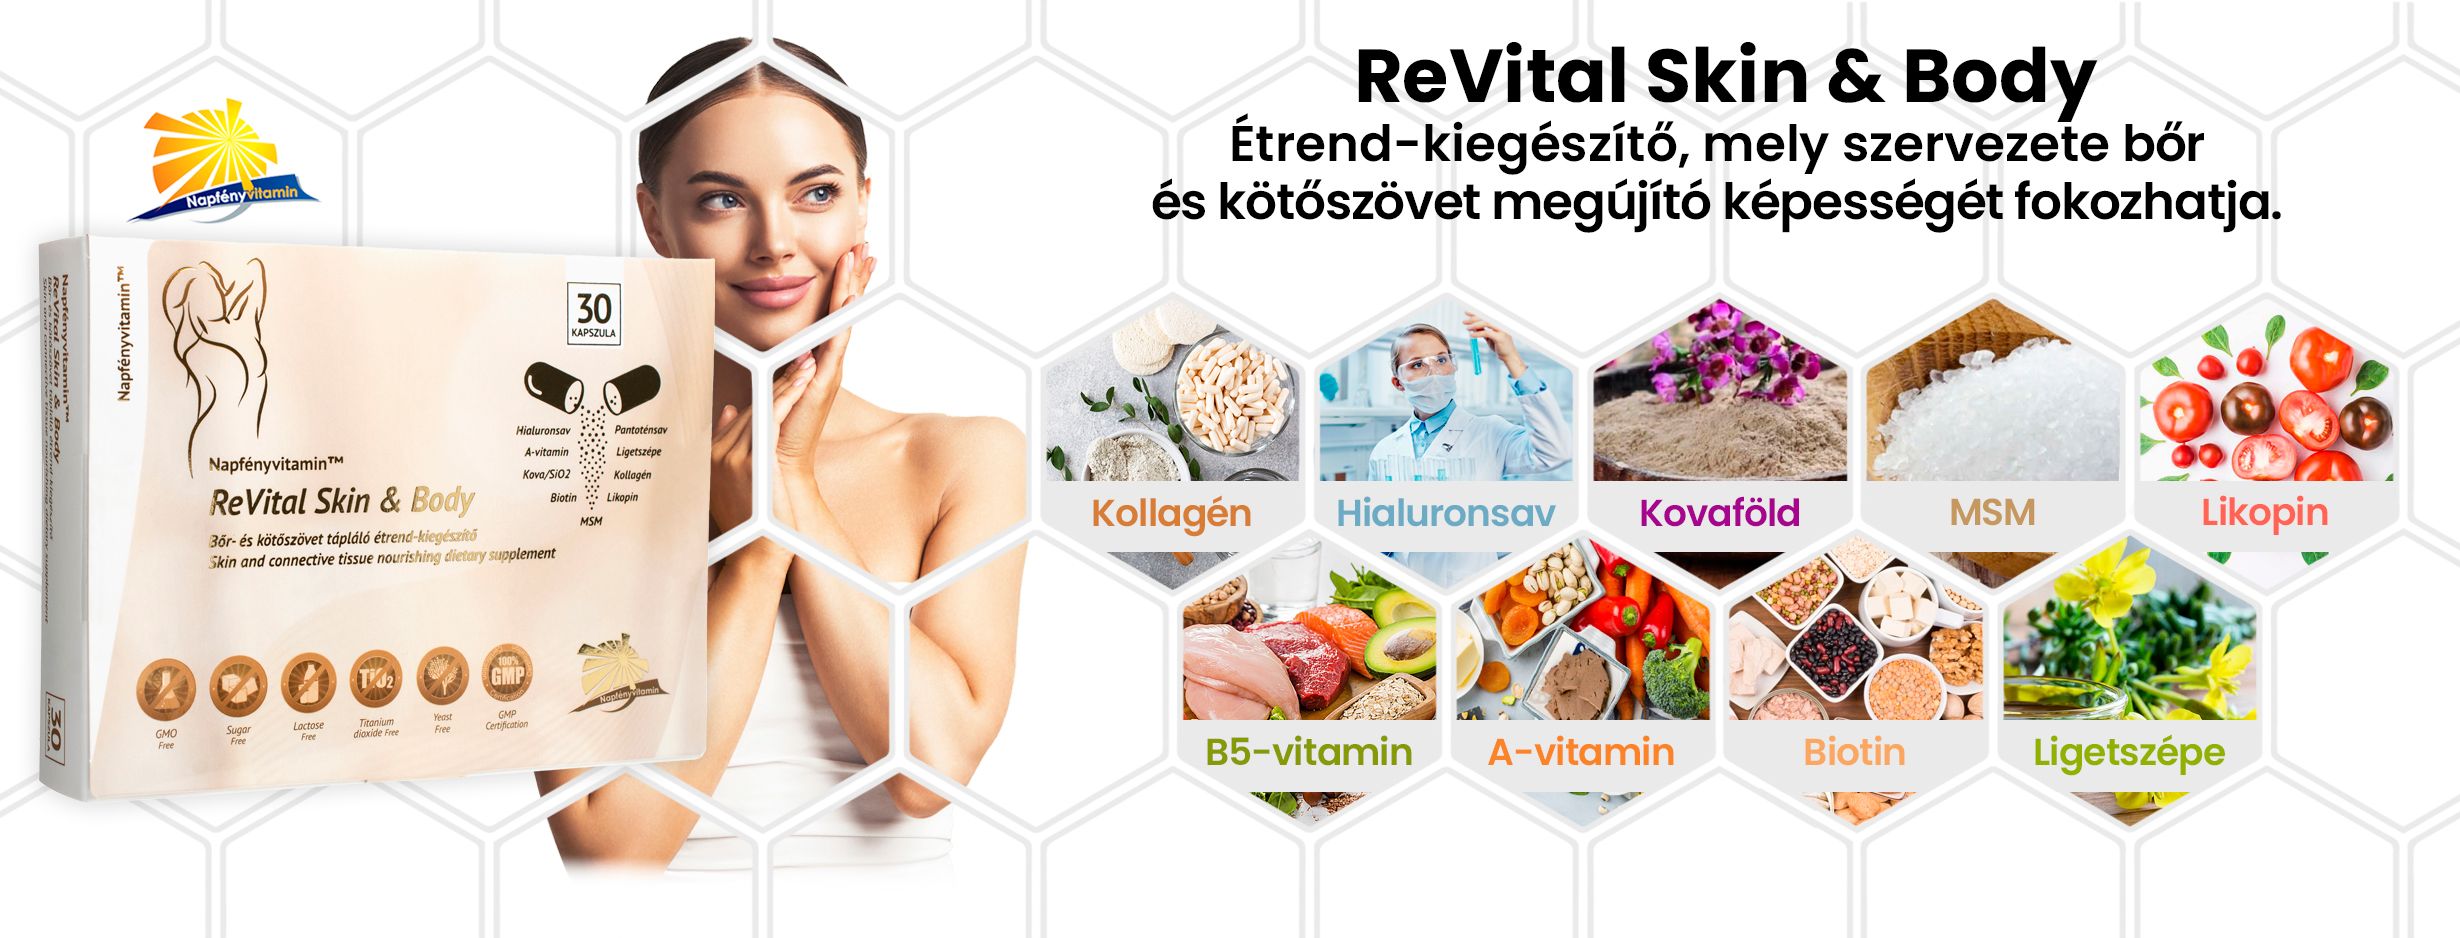 ReVital Skin & Body (30db) - Napfényvitamin